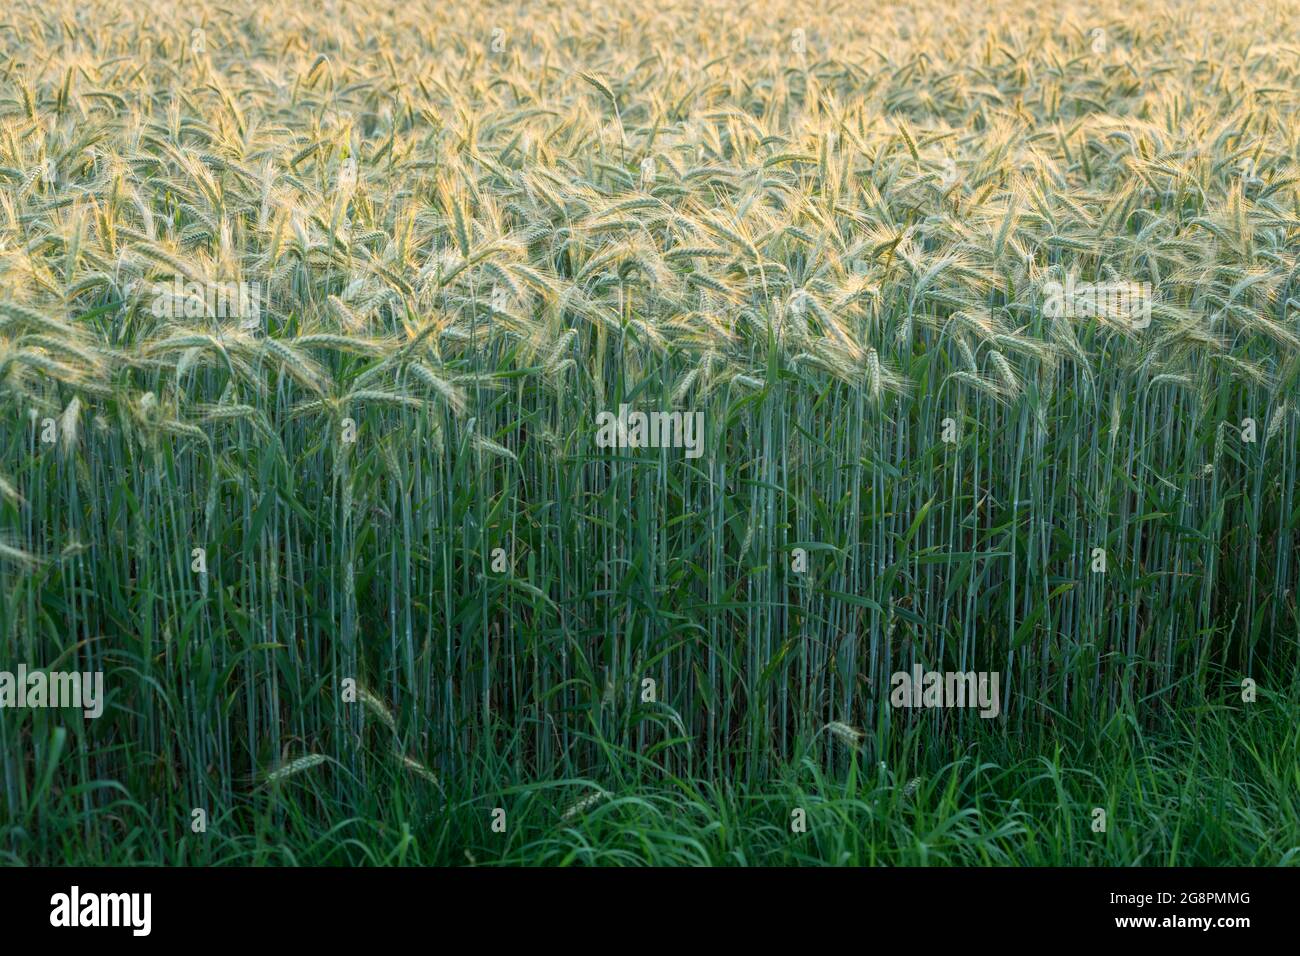 grain field in warm sunlight golden wheat ears in nature Stock Photo